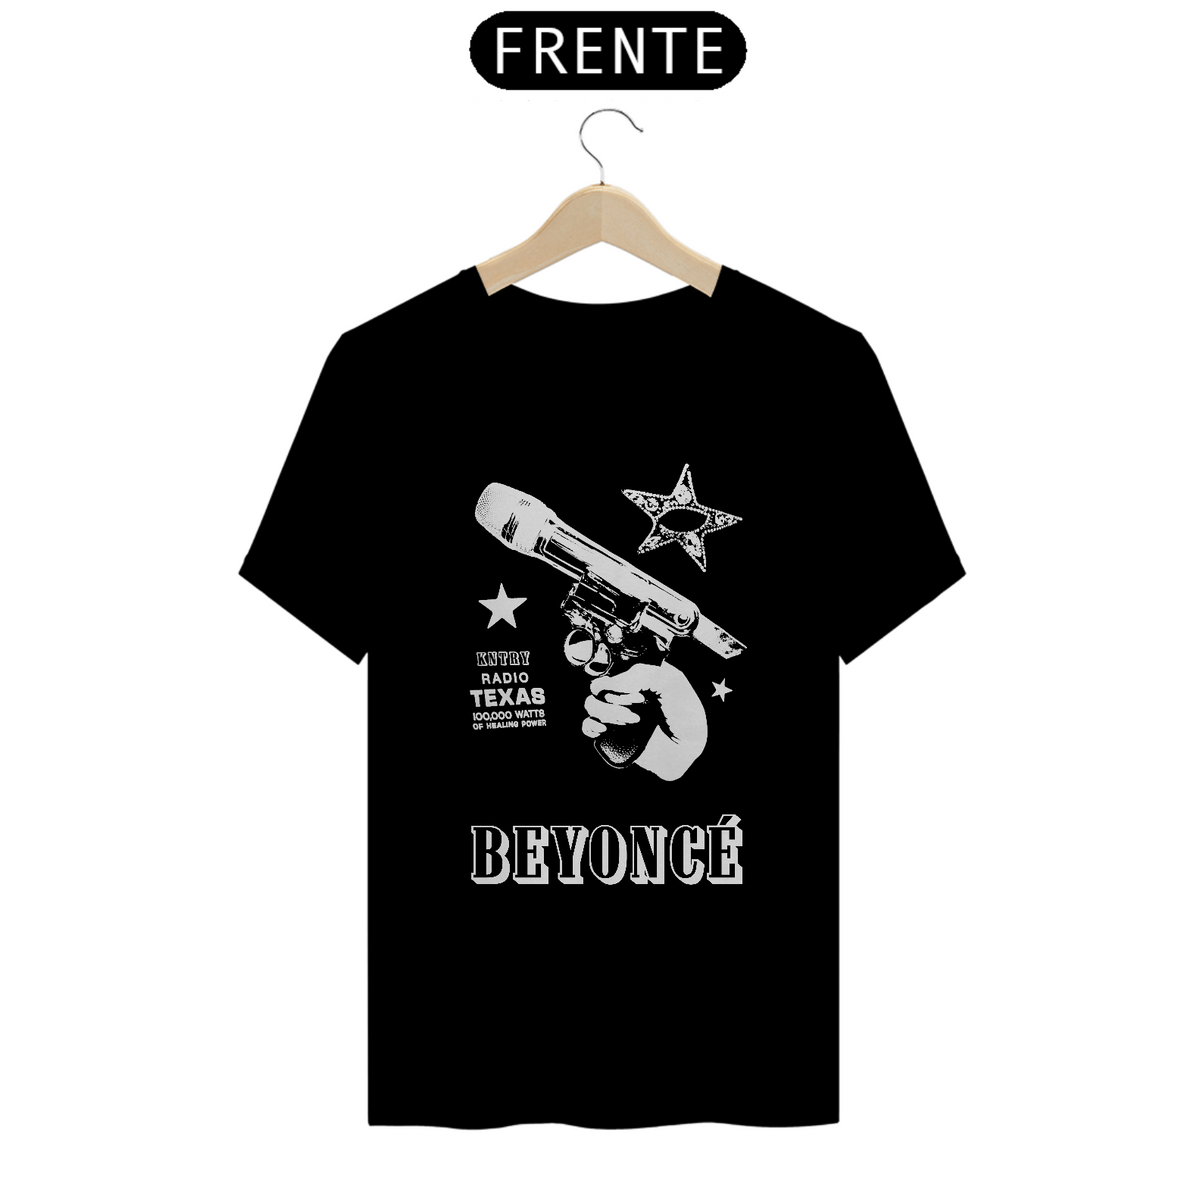 Nome do produto: Camiseta Beyoncé - Cowboy Carter Microphone Gun